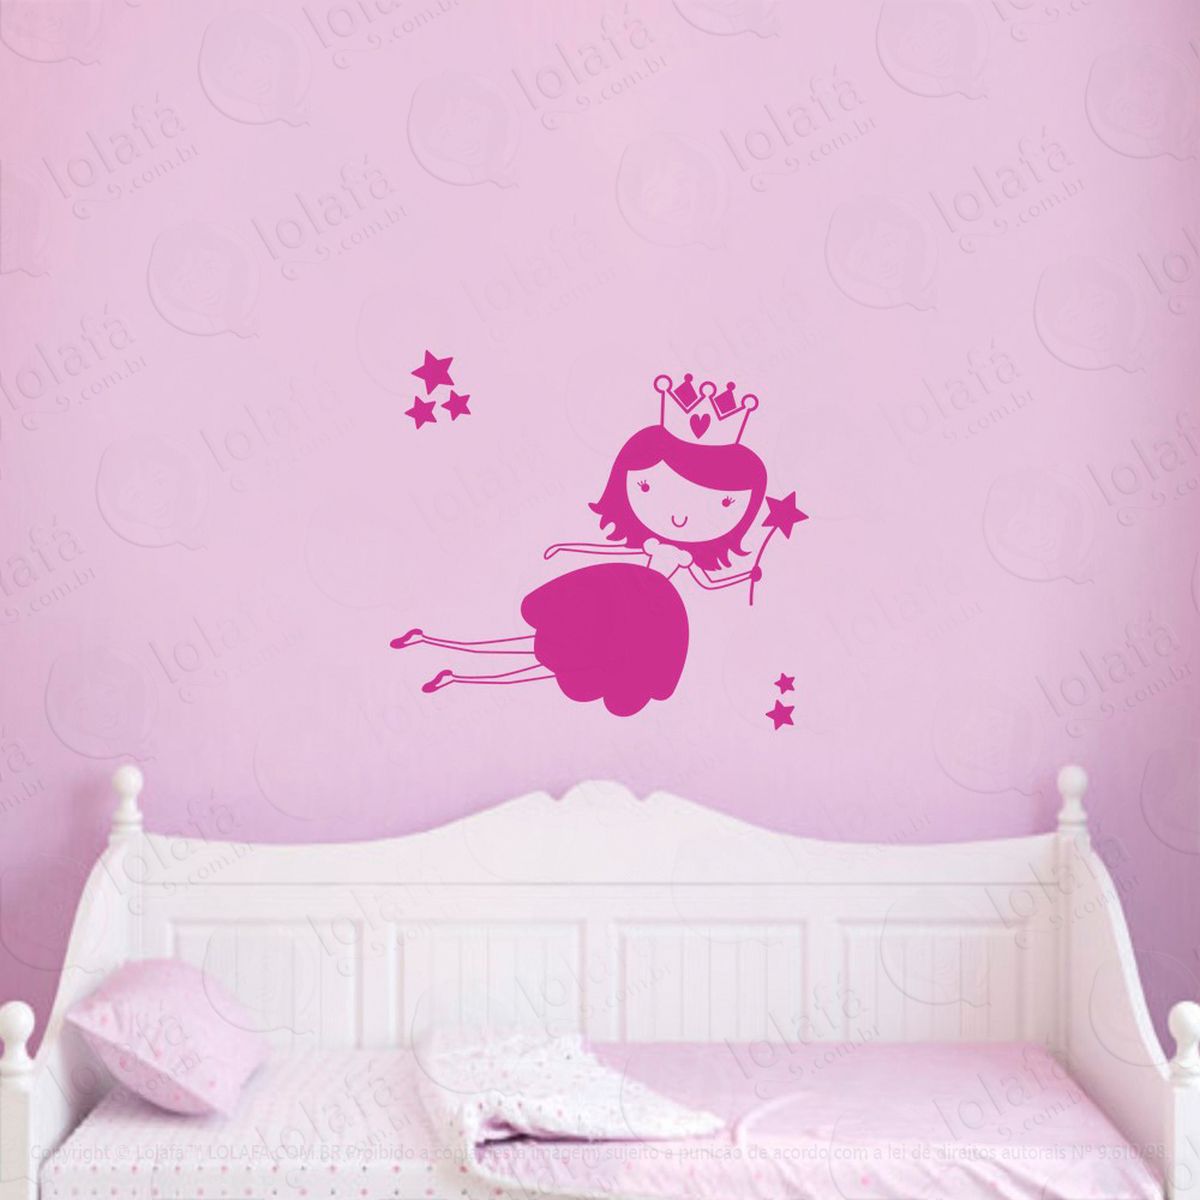 princesa adesivo de parede infantil para quarto - mod:4